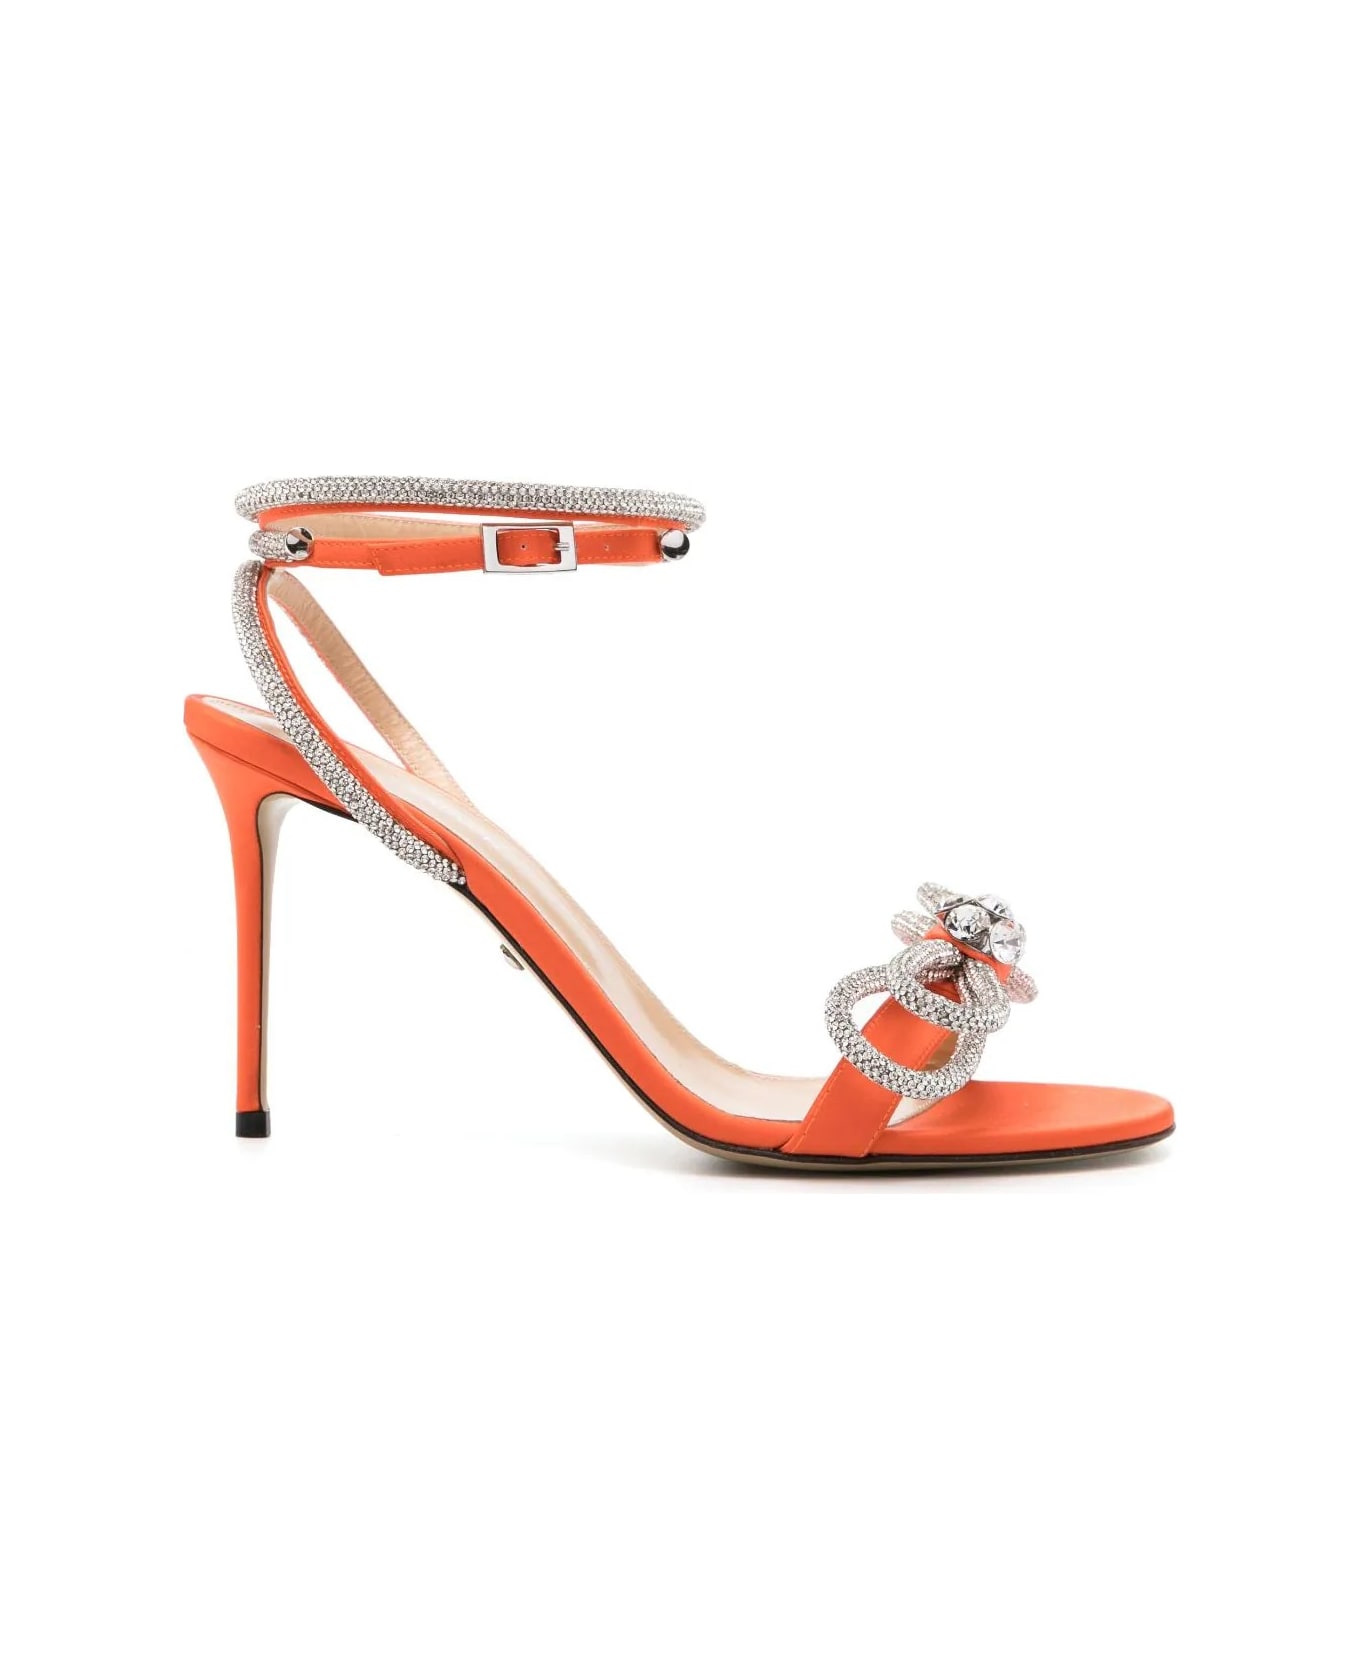 Mach & Mach Double Bow 95 Mm Sandals In Orange Satin With Crystals - Orange